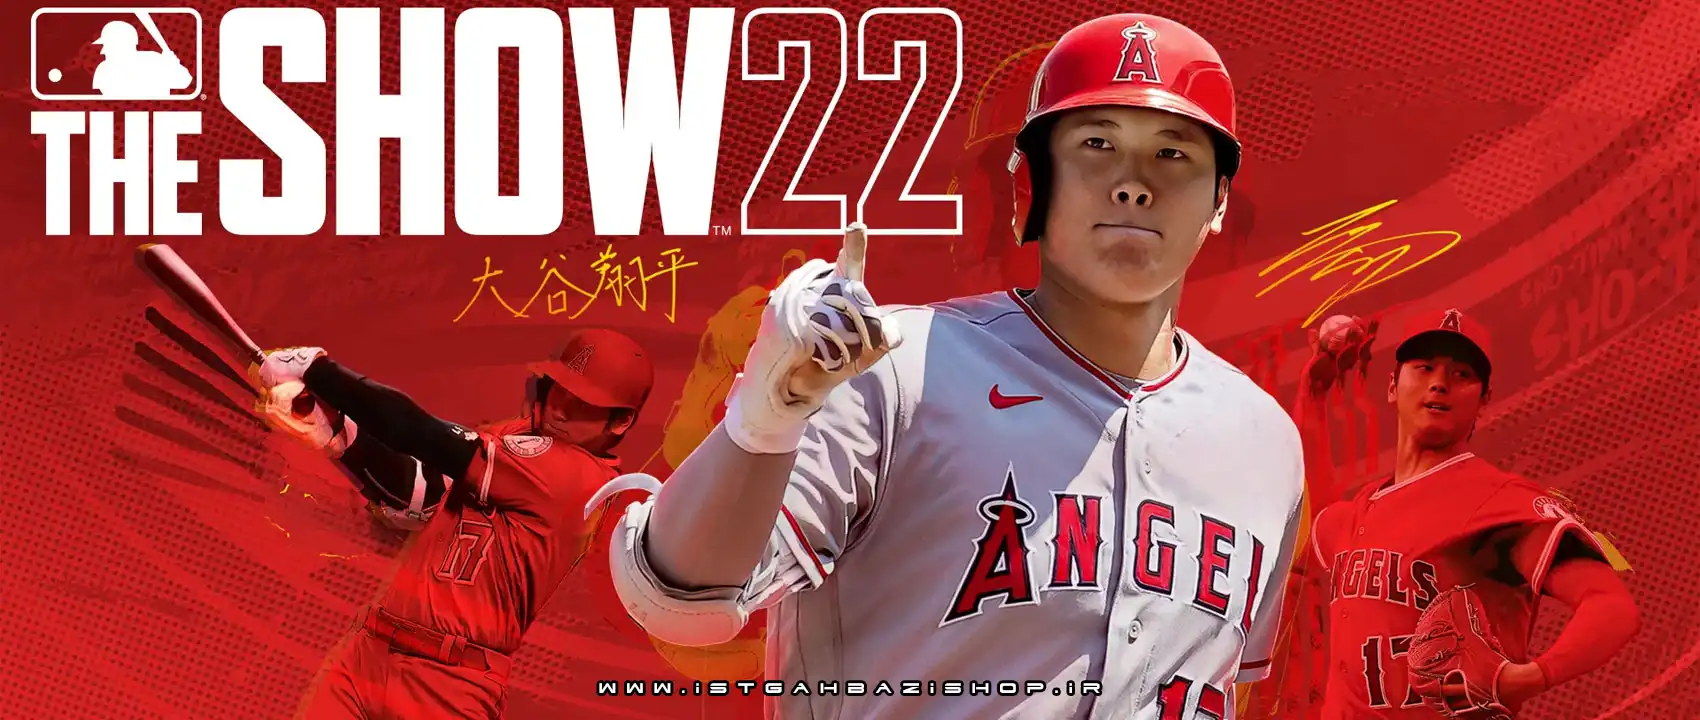 بازی MLB The Show 22 برای PS4